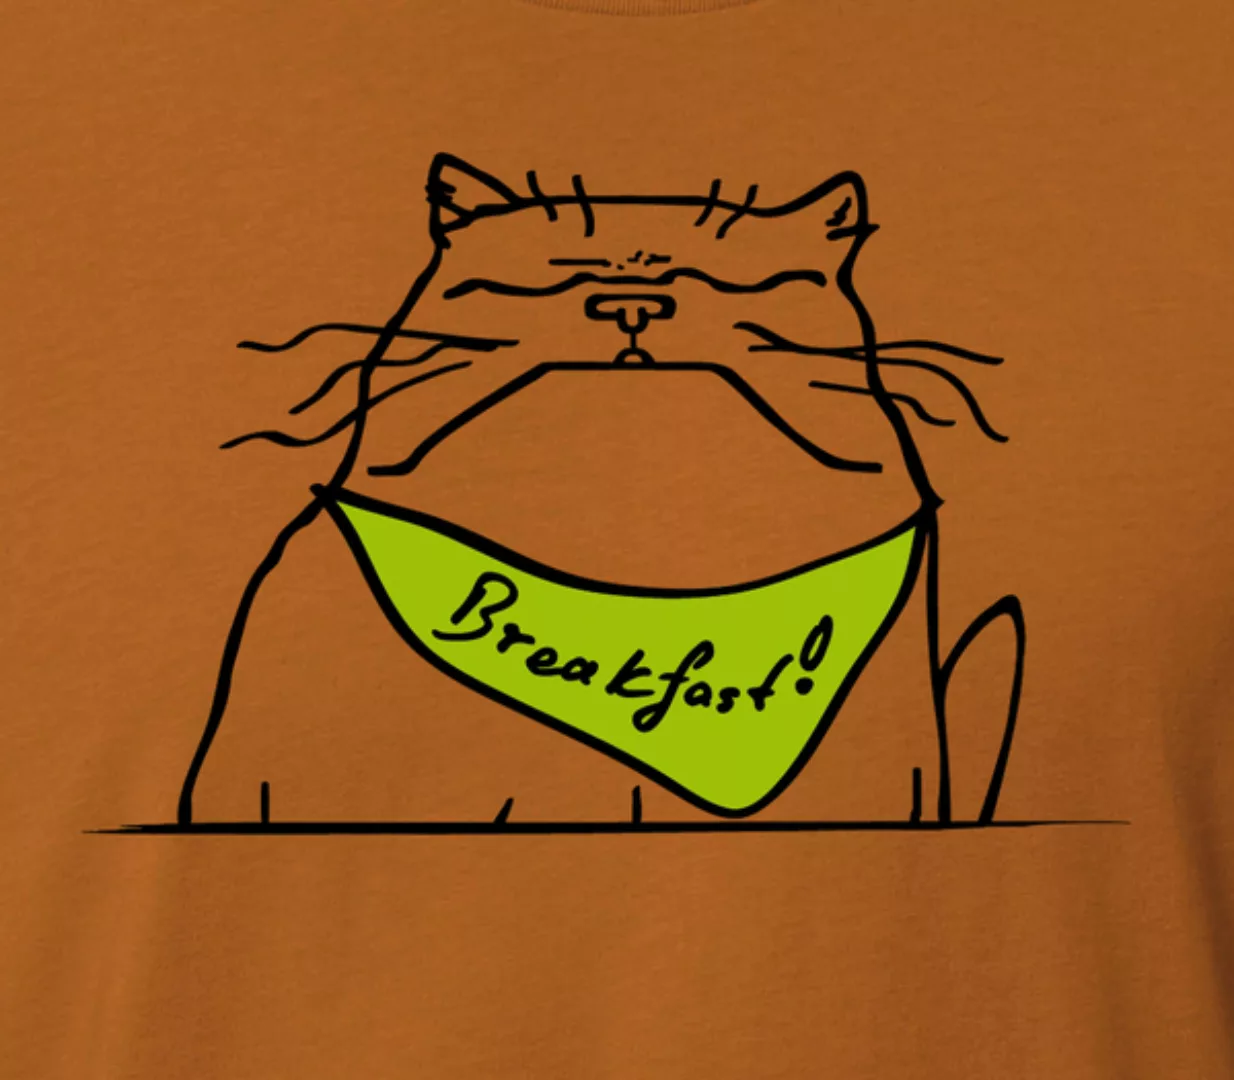 Herren T-shirt, "Breakfast", Roasted Orange günstig online kaufen